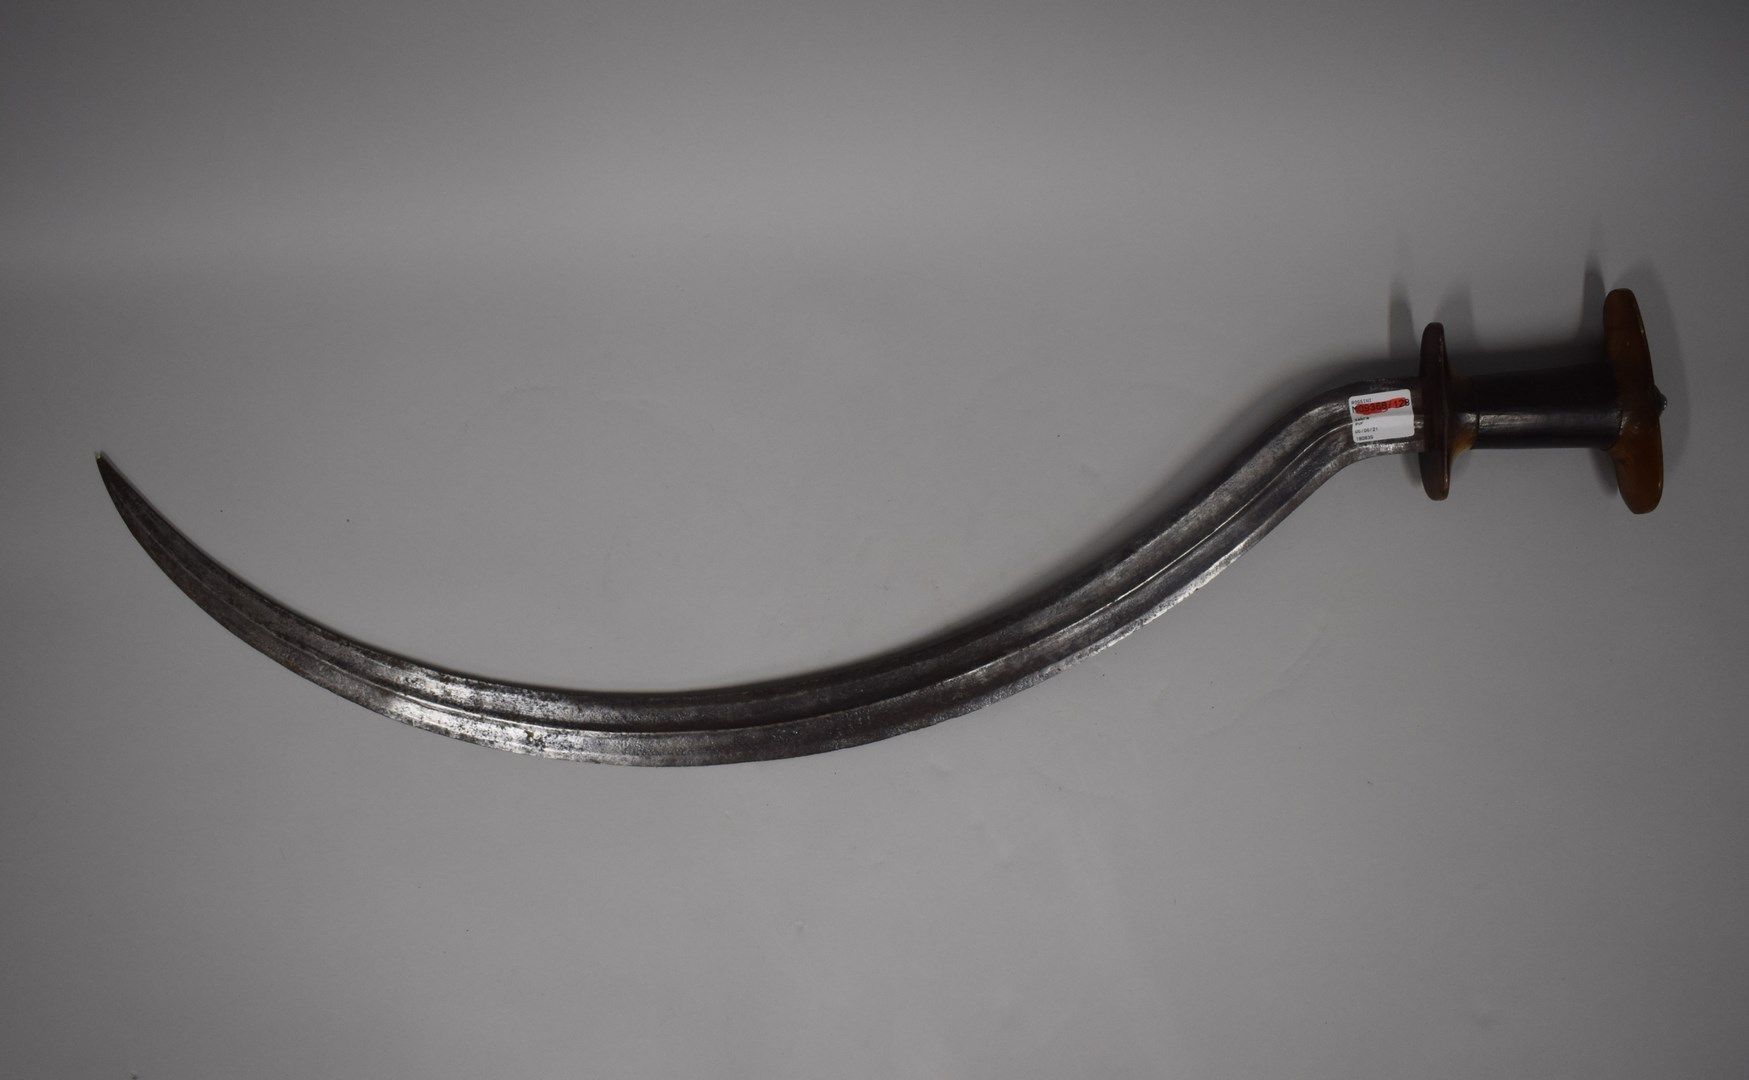 Null 弯曲的剑，刚果民主共和国

牛角手柄，经过精细的抛光处理

小事故

H.82厘米